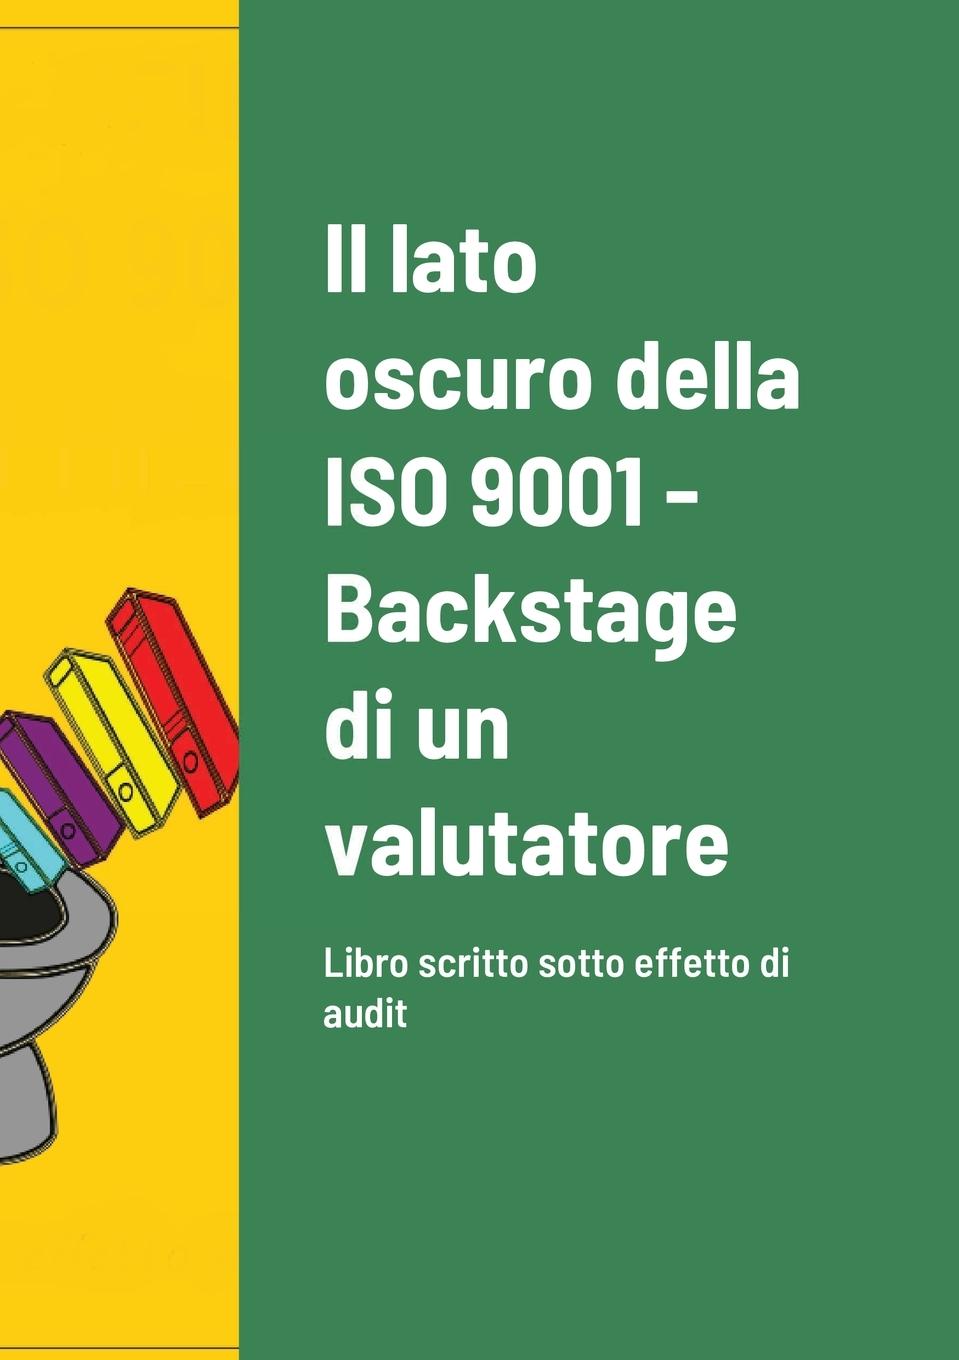 Könyv lato oscuro della ISO 9001 - Backstage di un valutatore 